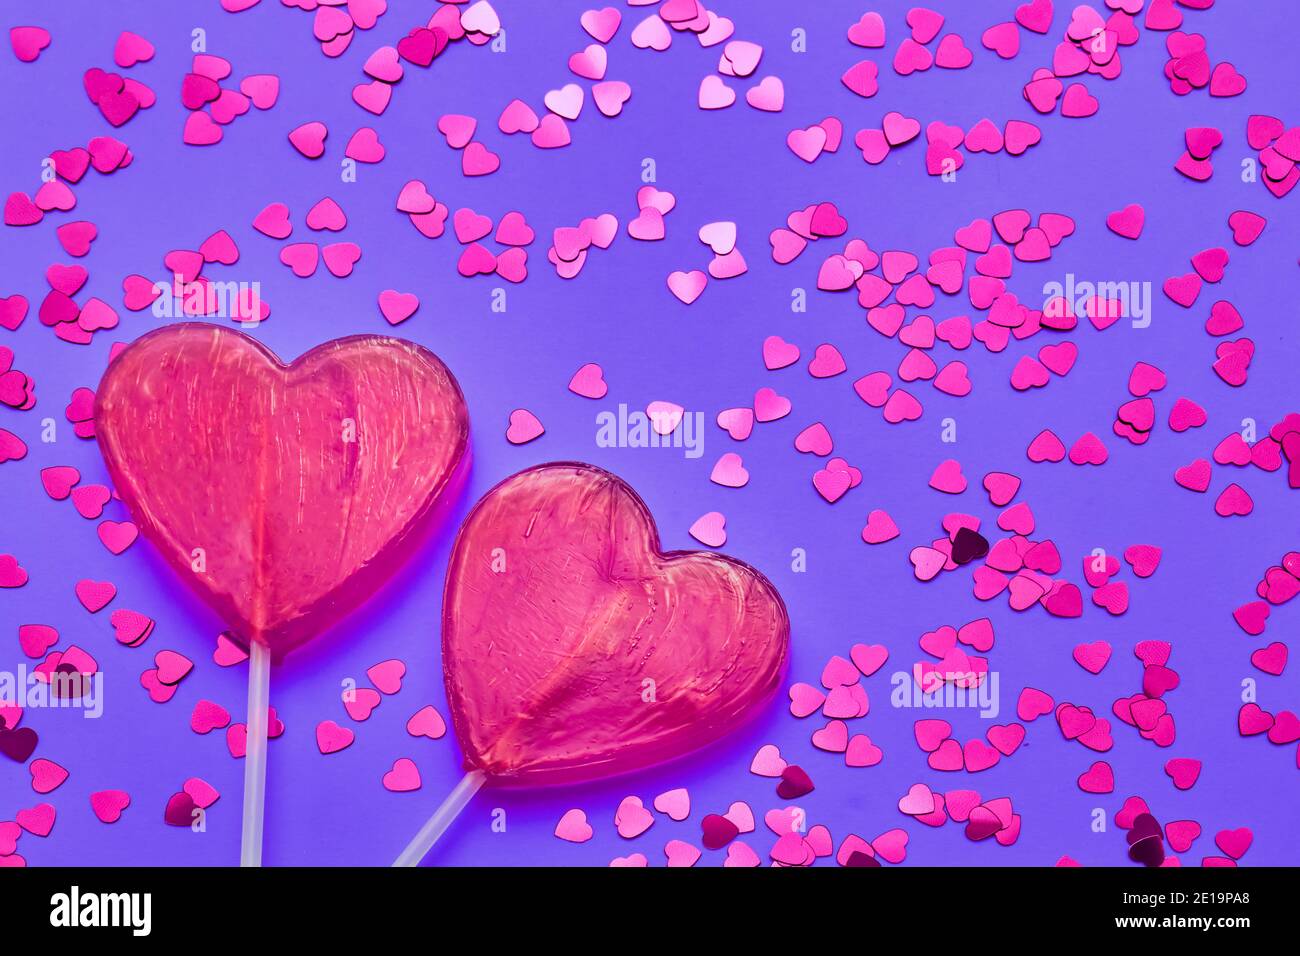 Hãy nhìn vào hình ảnh liên quan đến Ngày Valentine với những viên kẹo hình tim đáng yêu, tạo hình lấp lánh và màu tím rực rỡ. Đây sẽ là một món quà lãng mạn và đáng yêu cho người bạn yêu của bạn.